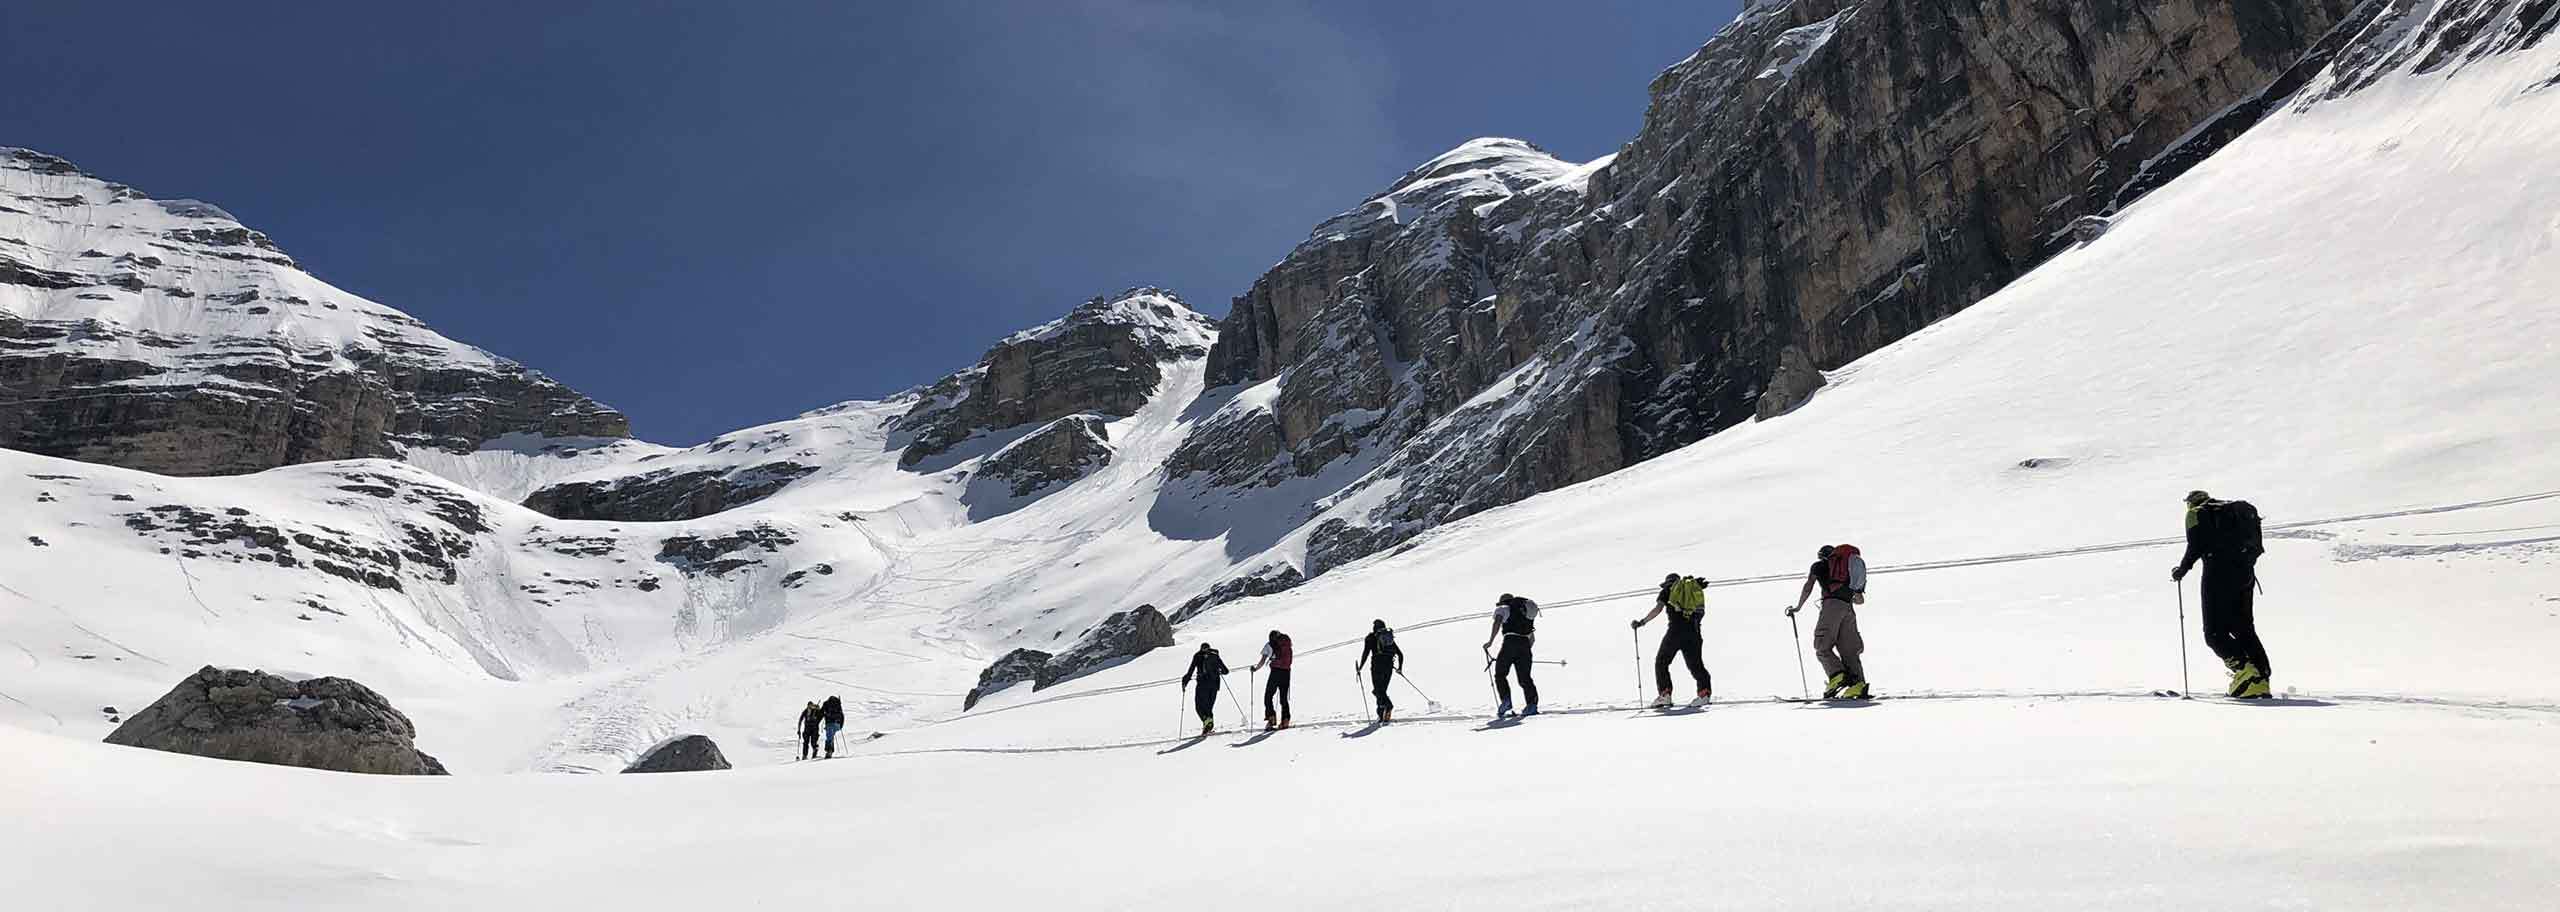 Ski Mountaineering in Brenta Dolomites, Ski Touring Trips